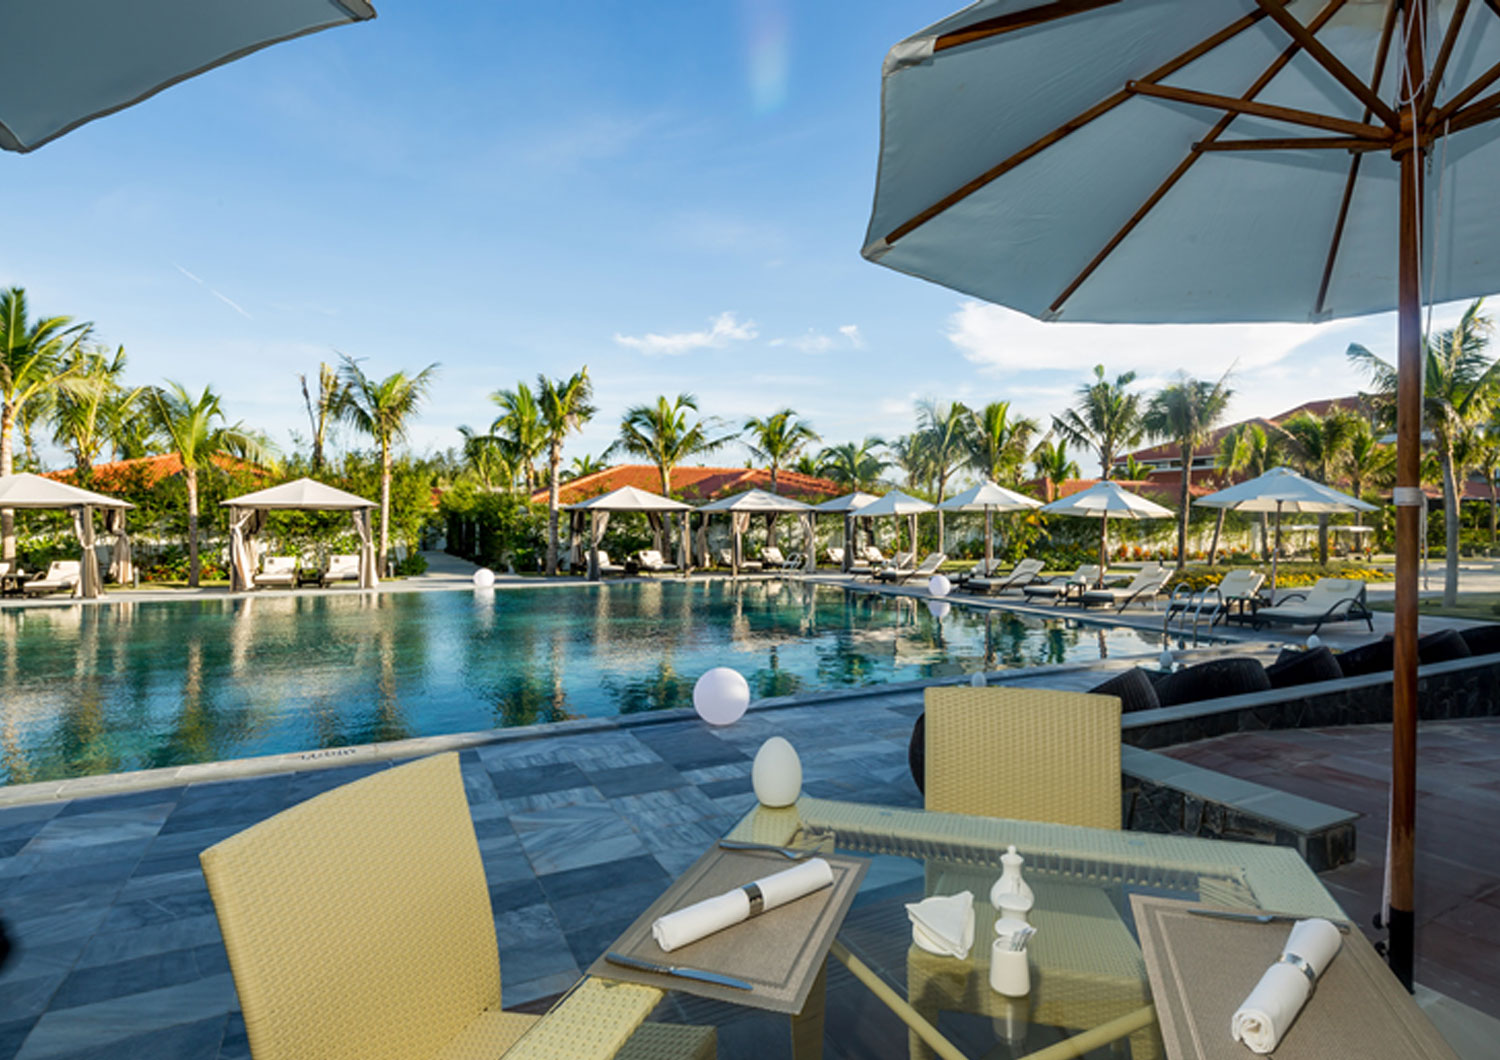 Grandvrio Ocean Resort Danang - Khách sạn sang trọng tựa 'sợi dây gắn kết' thành phố biển Đà Nẵng và Phố cổ Hội An 19